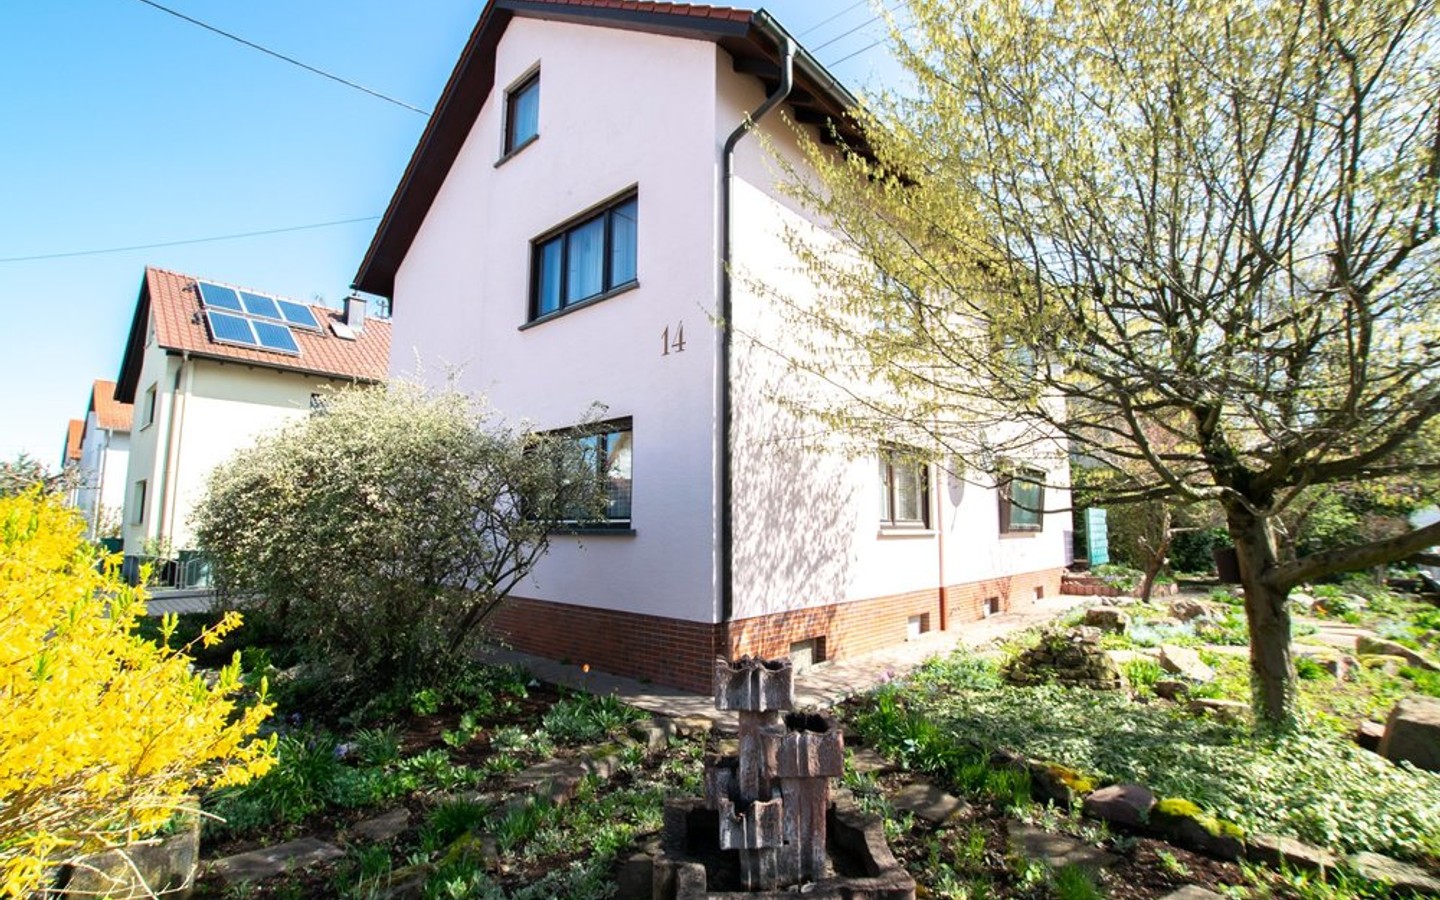 Blick vom Garten auf das Haus - Walldorf - bevorzugte und gewachsene Wohnlage; 3-Familienhaus für Kapitalanleger oder Eigennutzer